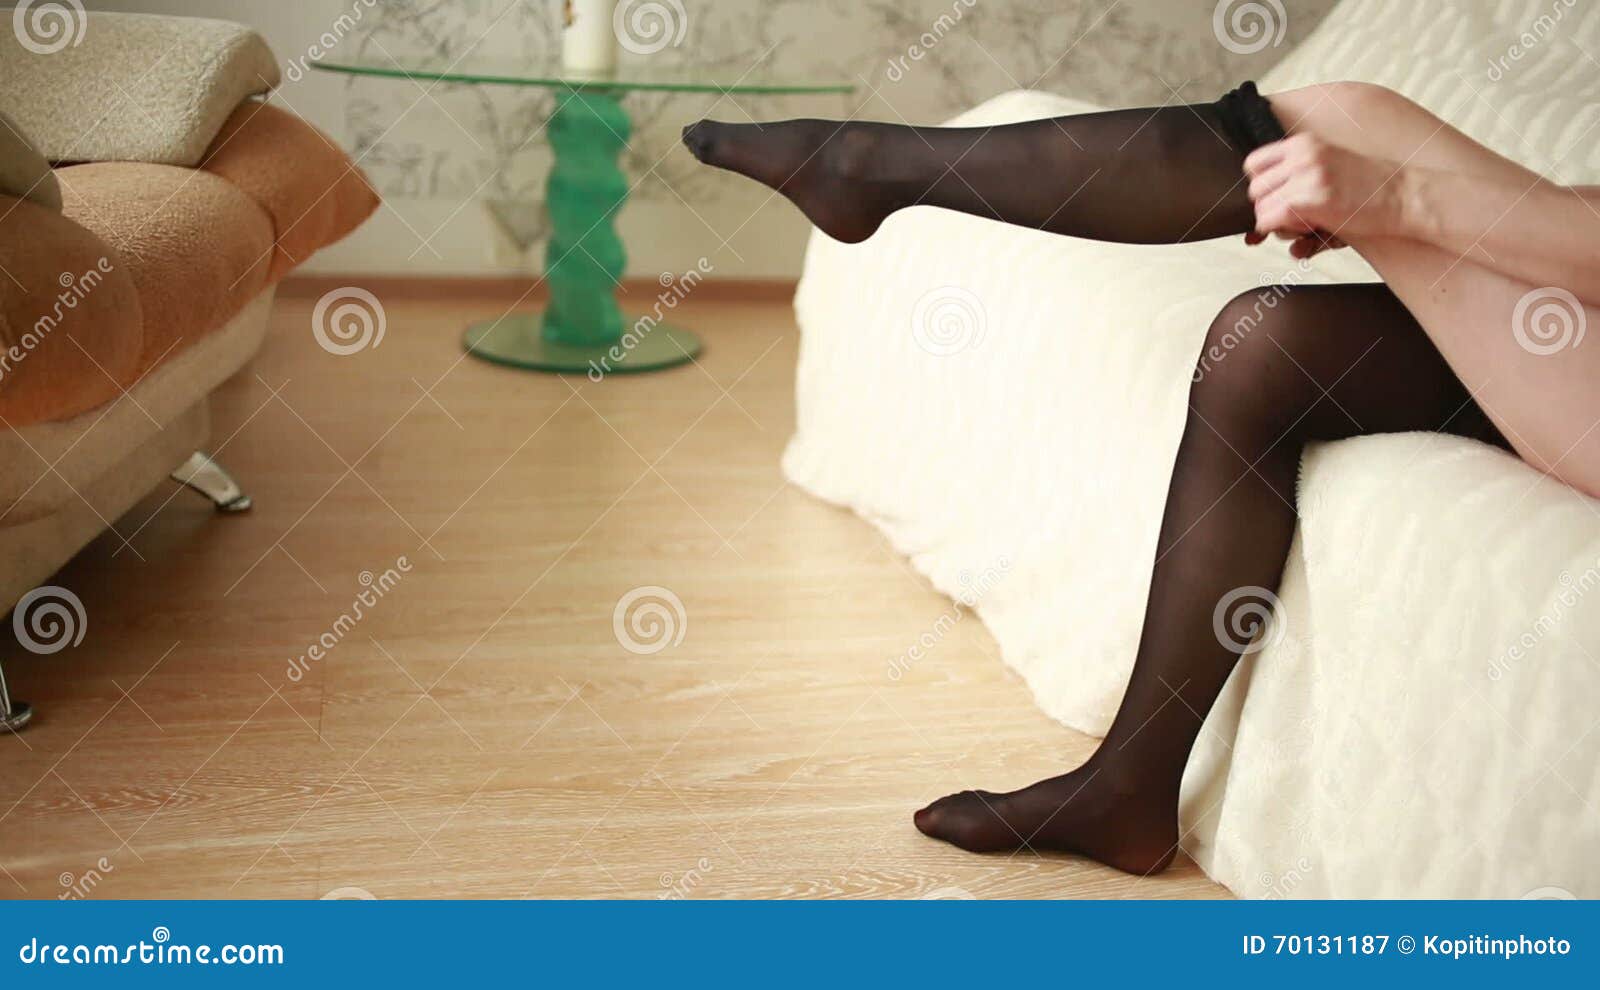 amanda zabel recommends girl in nylon stocking pic